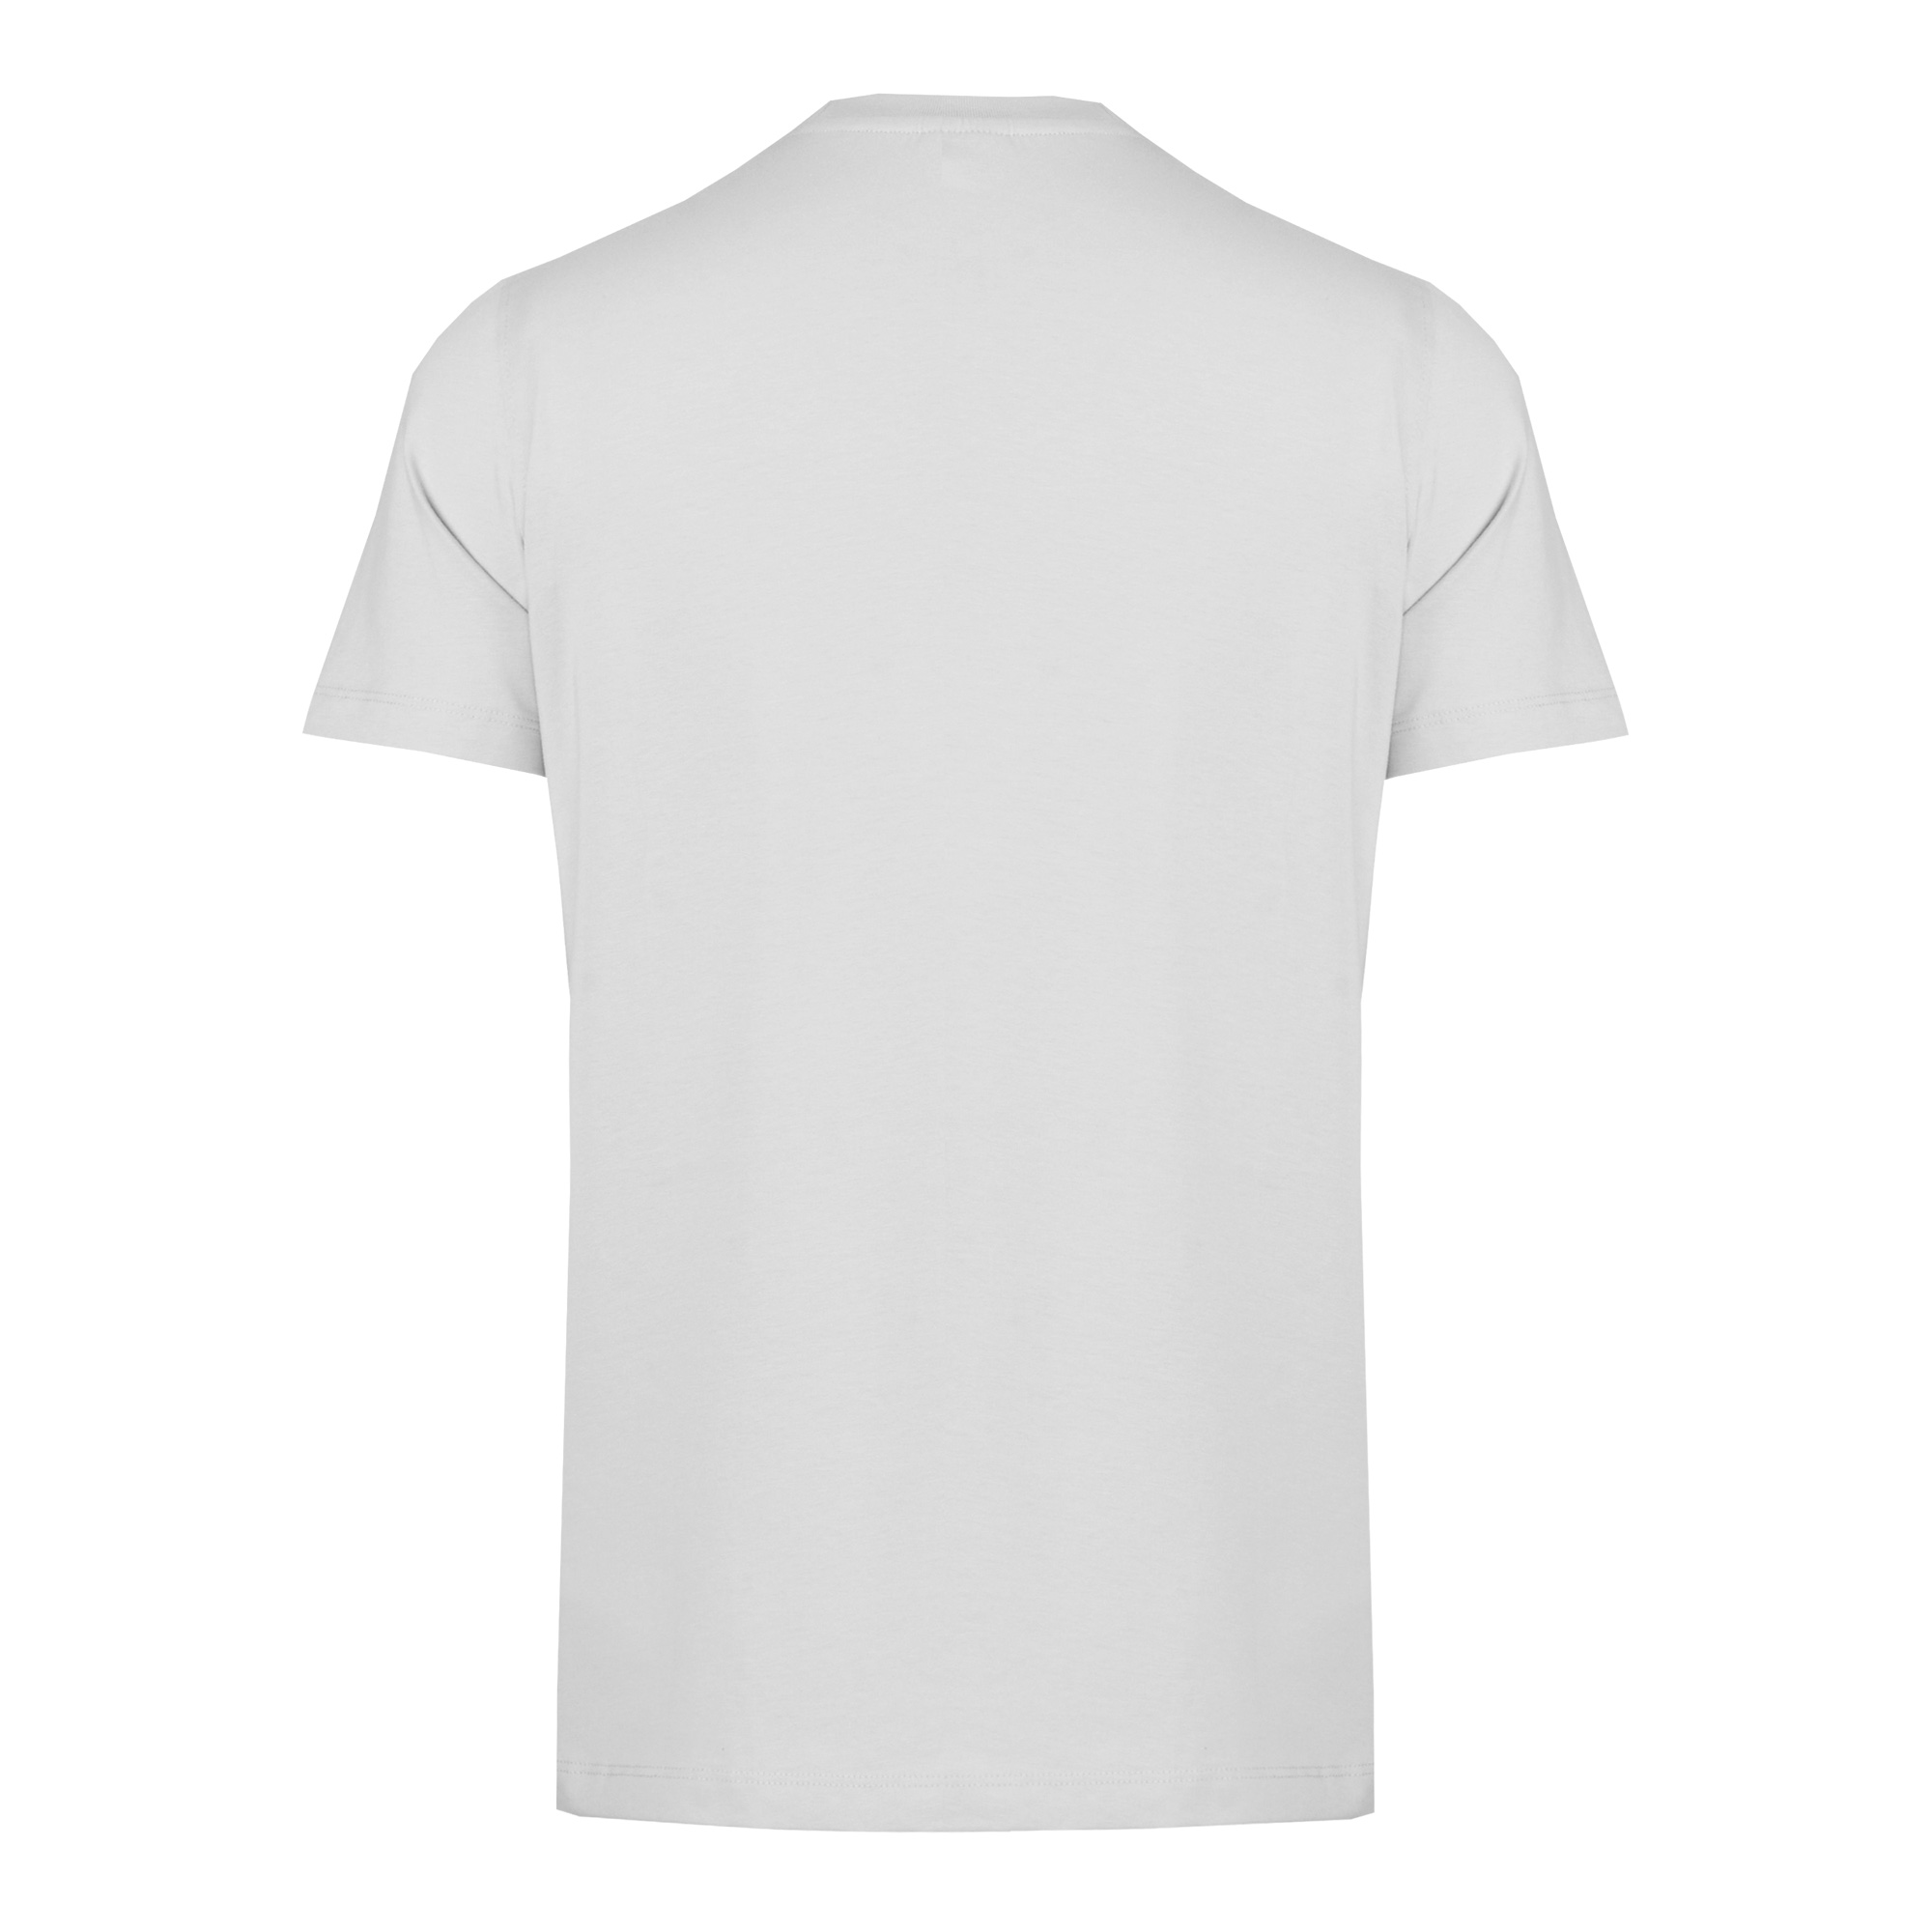 تی شرت آستین کوتاه مردانه جی تی هوگرو مدل 1035130 -  - 2